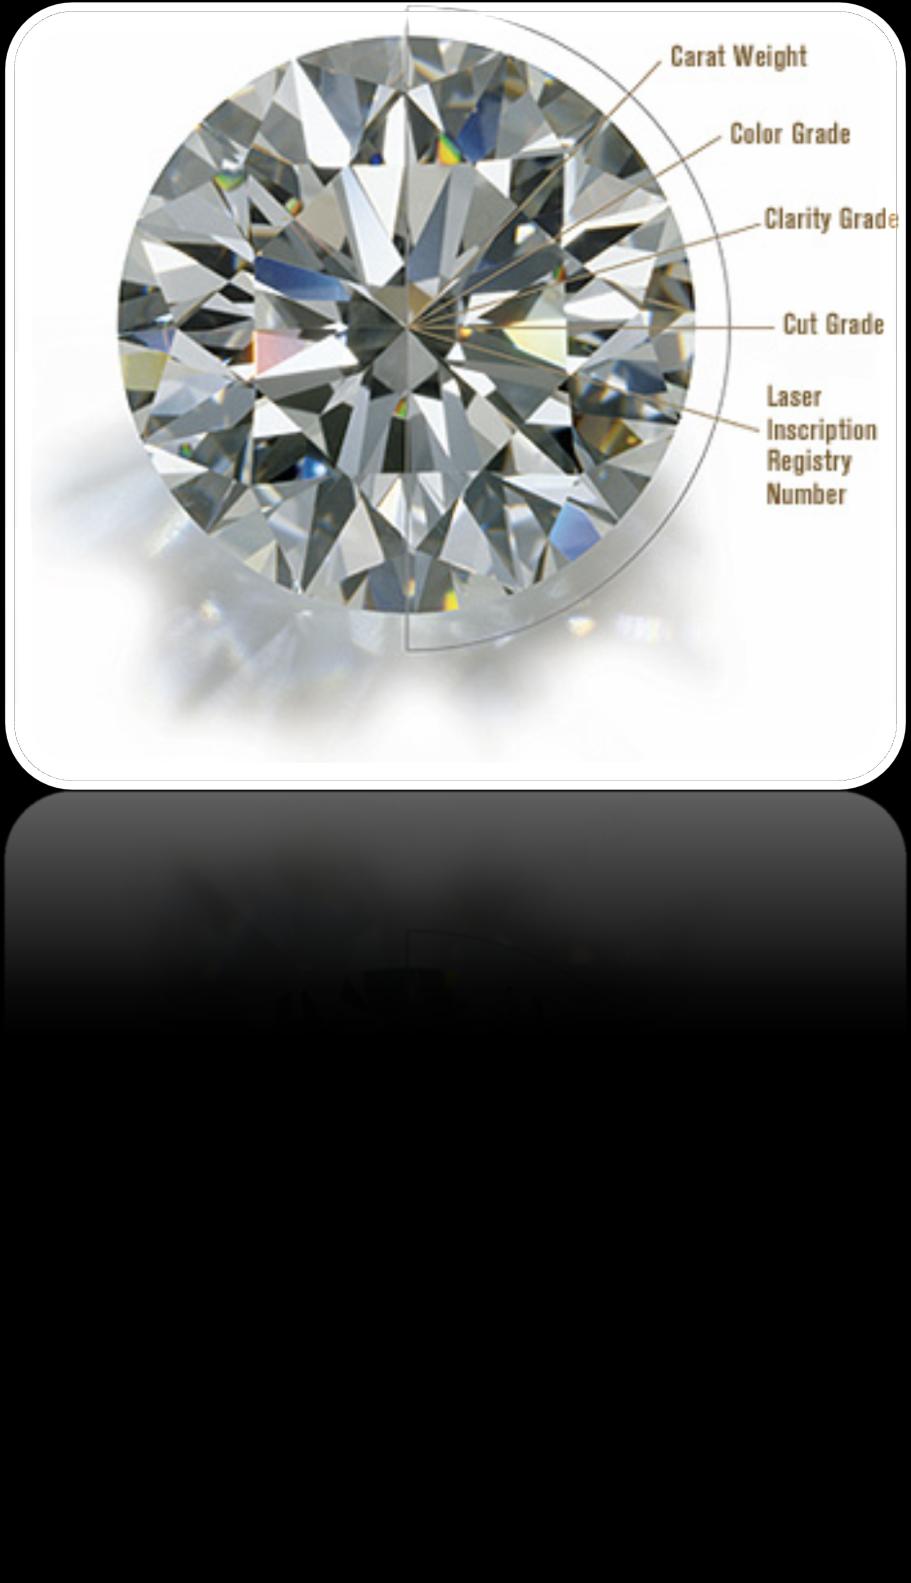 Yüksek sertliği bir yana, elmas bir takım ayırt edici özellikleri ile karakterize edilir: Parlatılmış elmasların kalite değerlendirmesi genel olarak bilinen 4C kavramı ile özetlenebilmektedir.